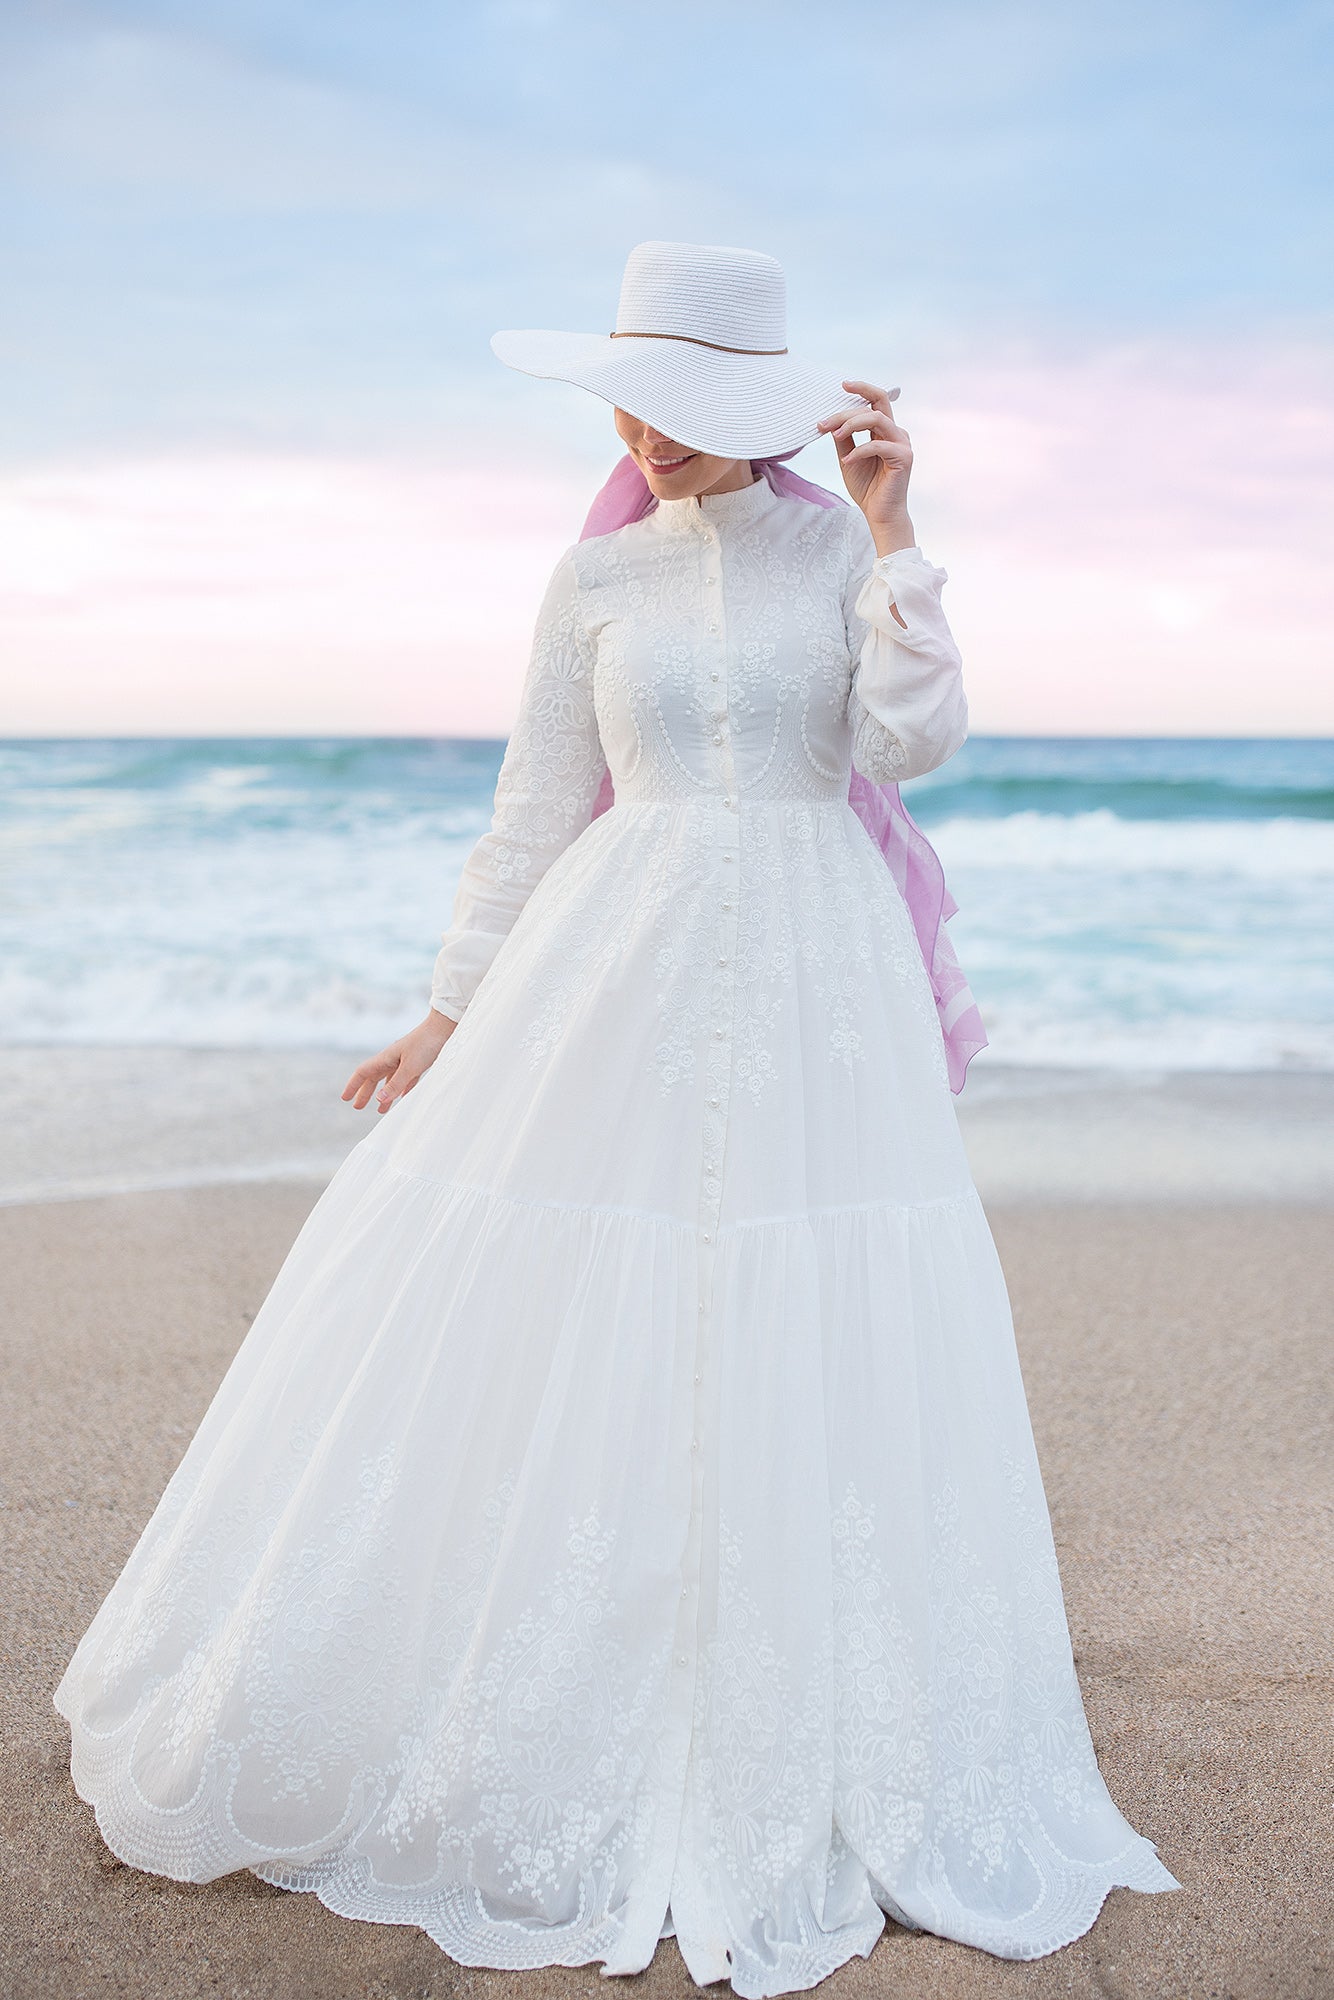 White Dream Dress - Muslima Wear